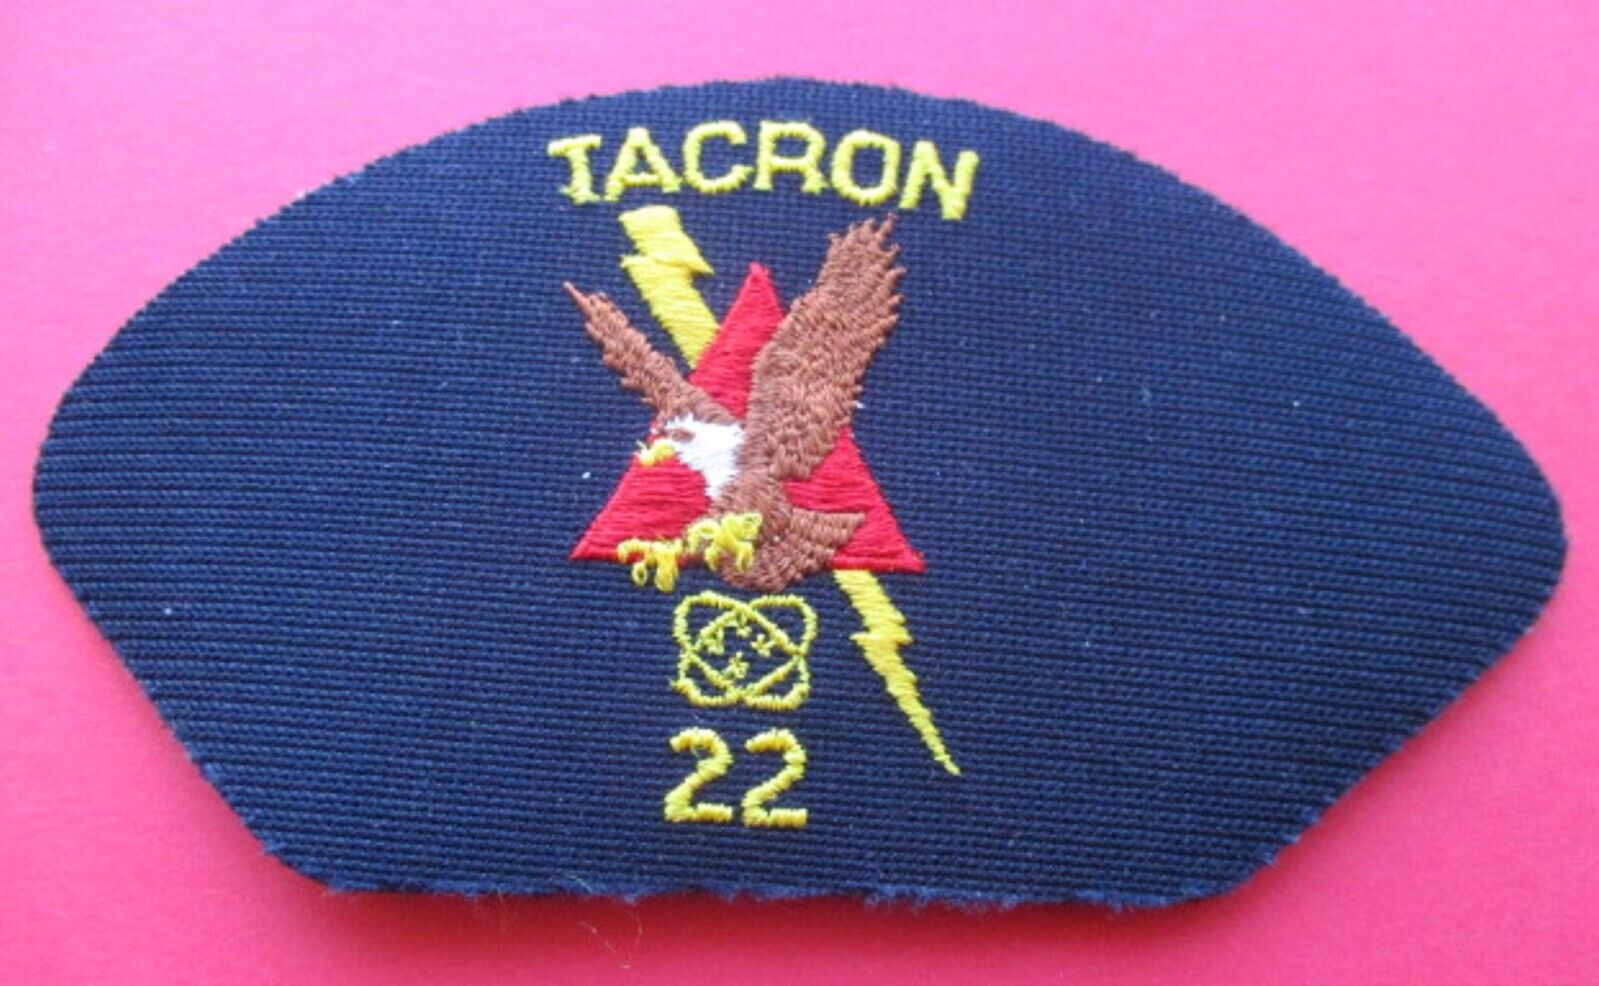 TACRON AIR CONTROL SQUADRON 22 PATCH BADGE CAP